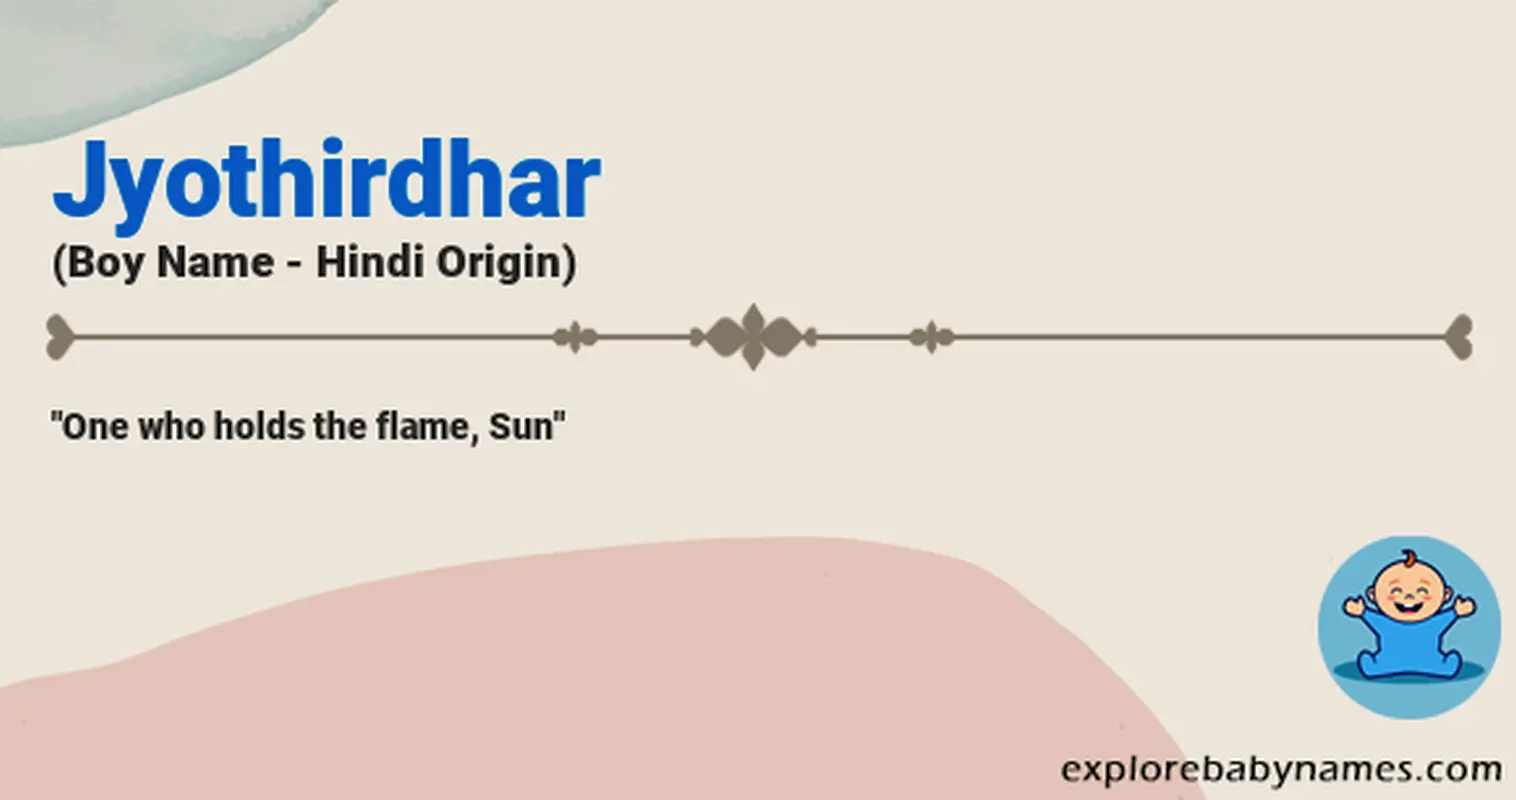 Meaning of Jyothirdhar